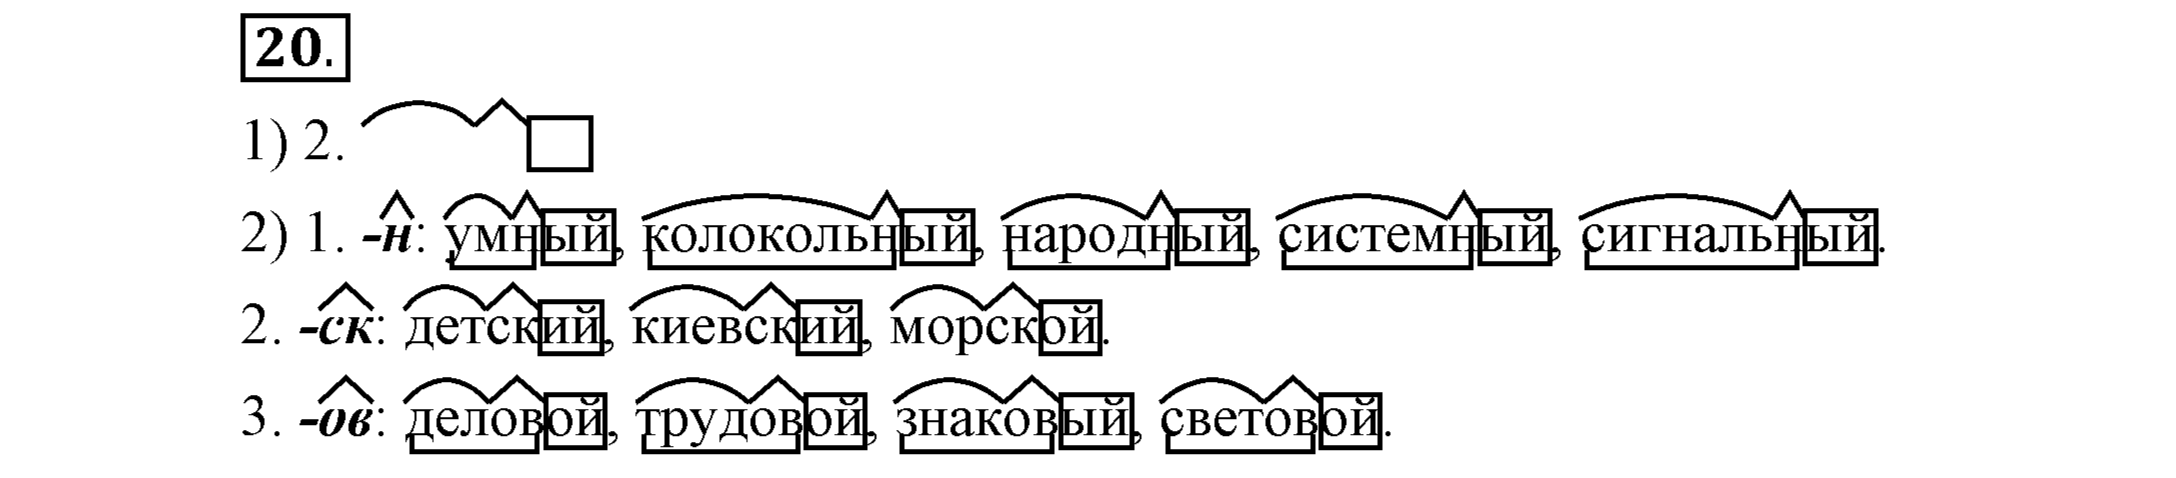 Русский язык 5 класс упр 713